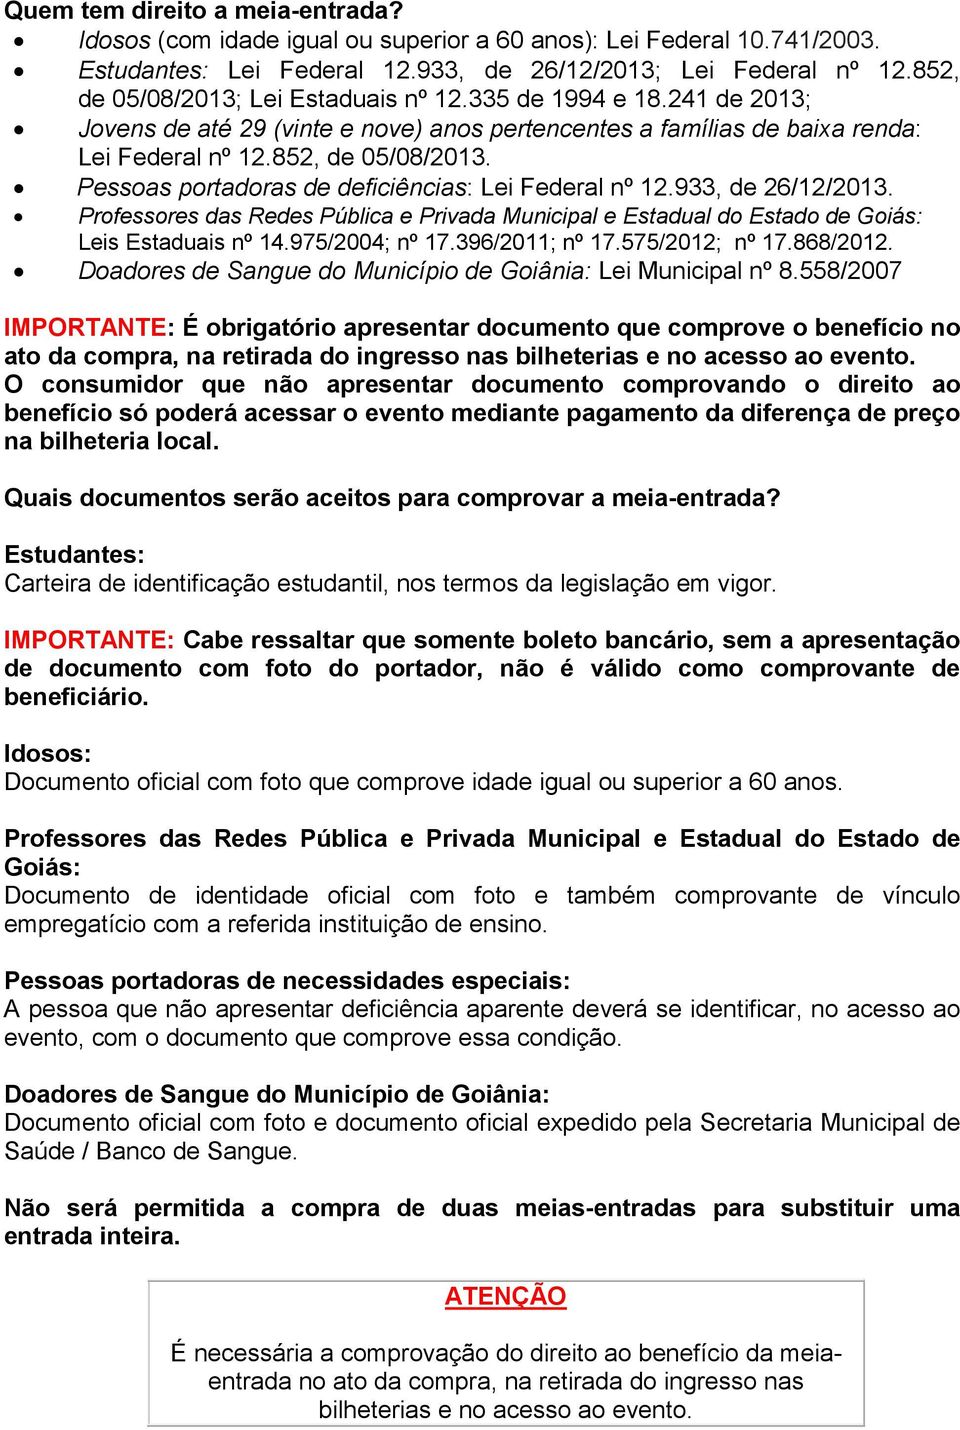 933, de 26/12/2013. Professores das Redes Pública e Privada Municipal e Estadual do Estado de Goiás: Leis Estaduais nº 14.975/2004; nº 17.396/2011; nº 17.575/2012; nº 17.868/2012.